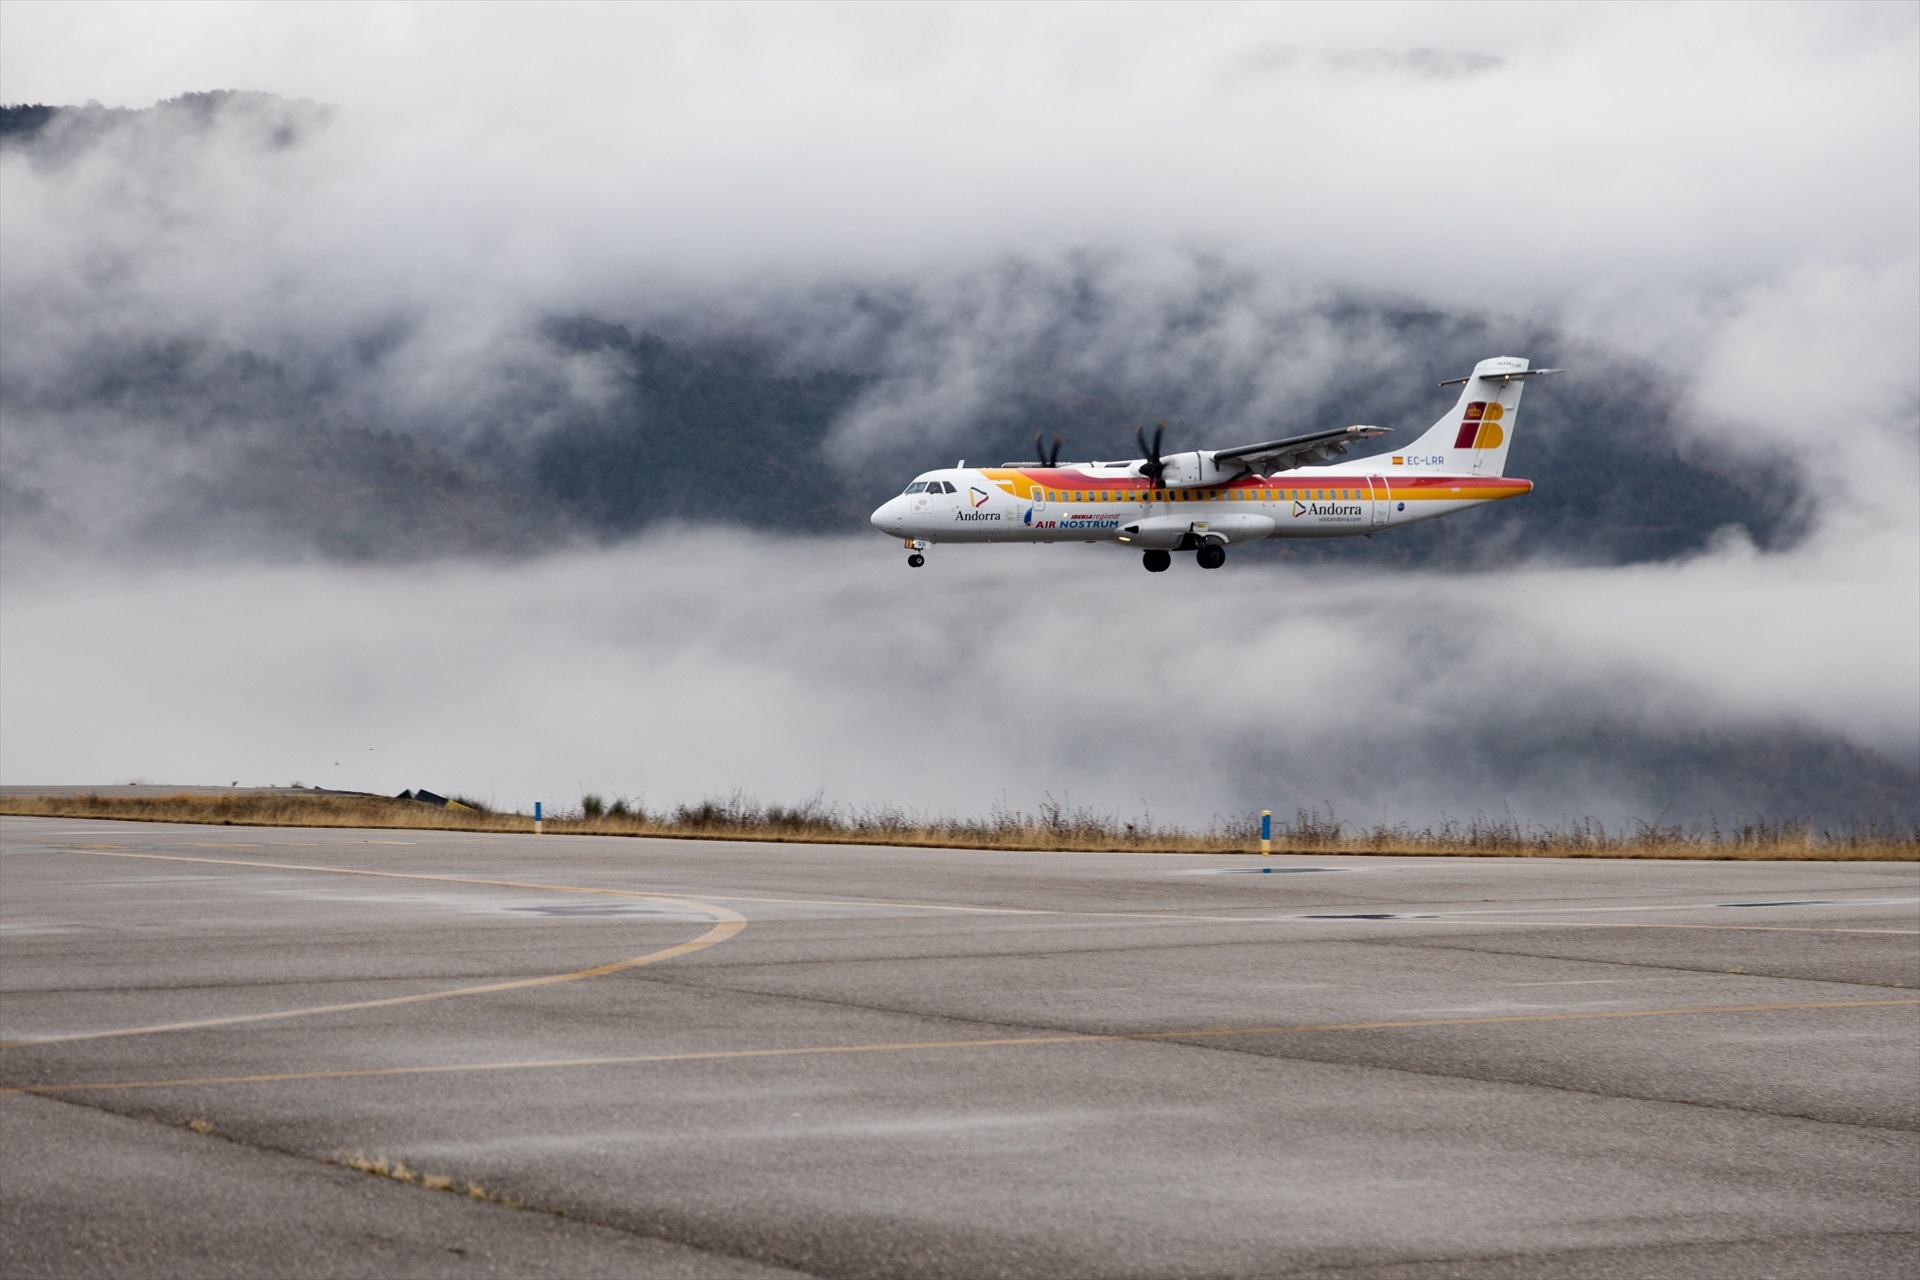 El aeropuerto de Andorra-la Seu recibe críticas por llevar prácticamente solo turistas a Andorra